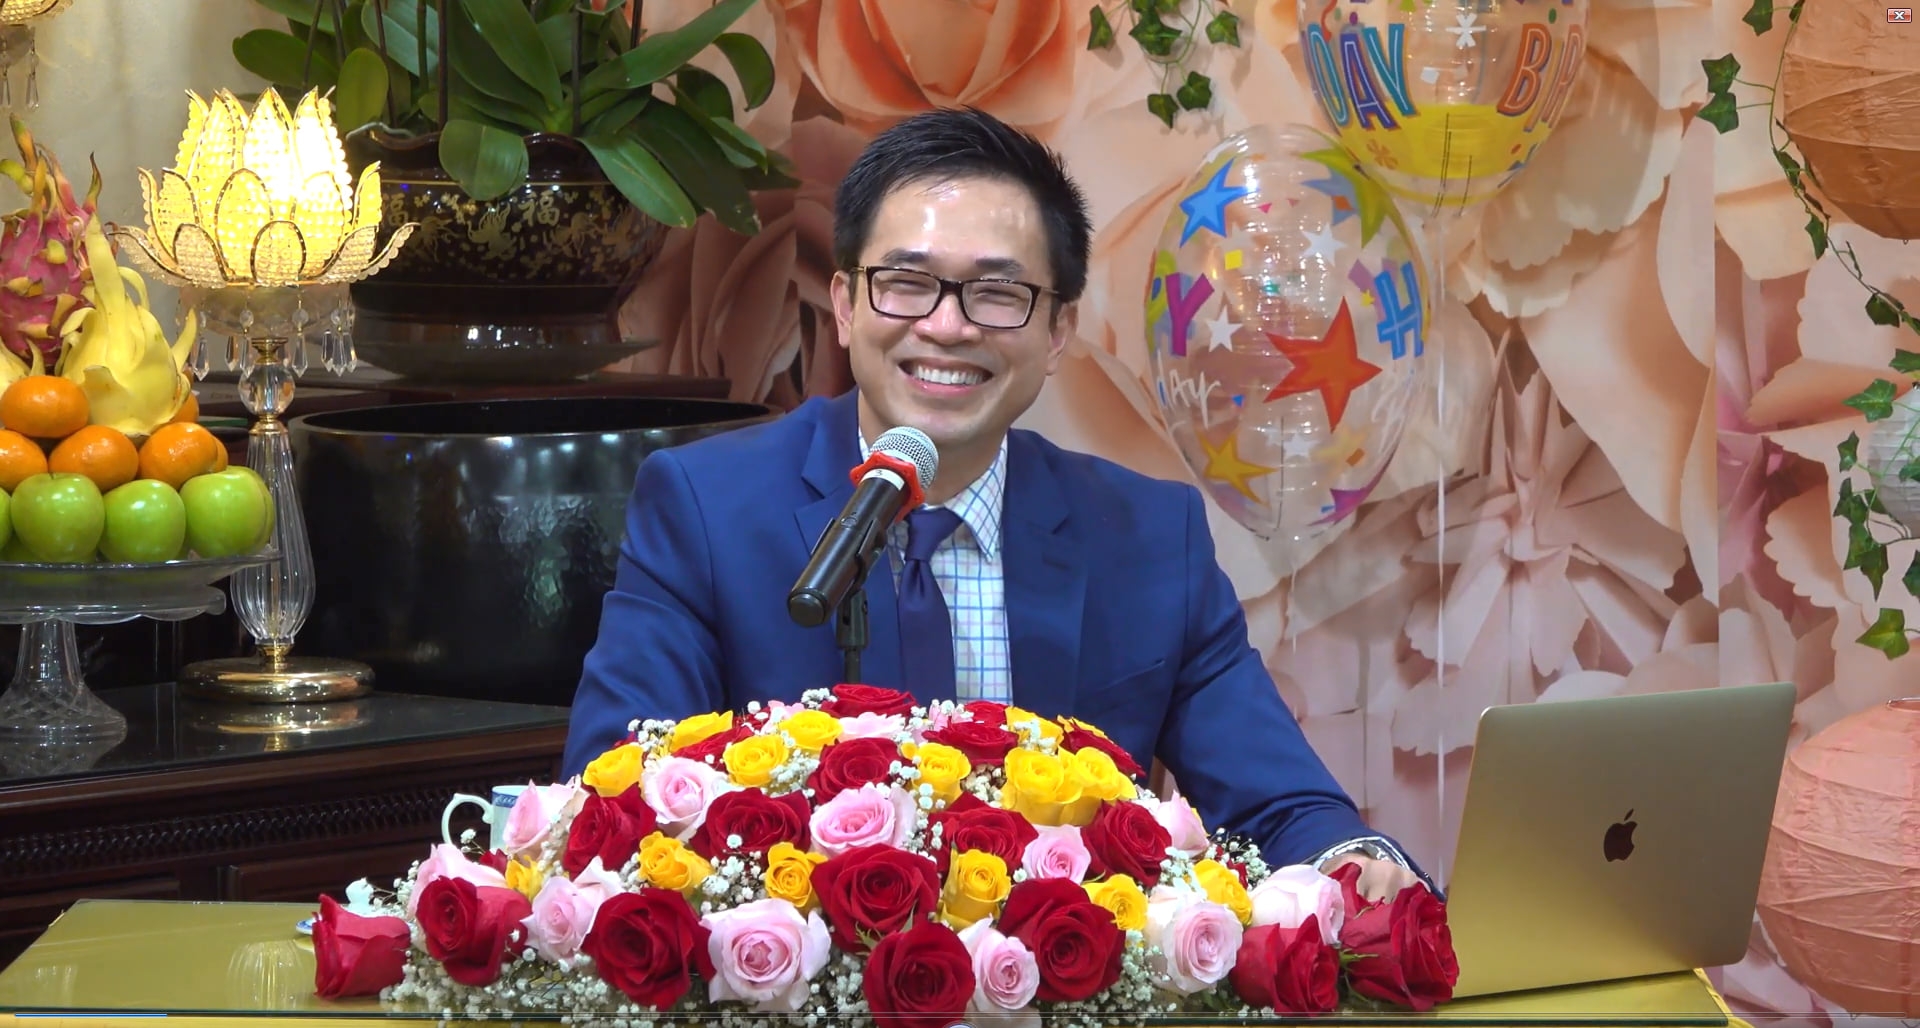 Bác sĩ Huỳnh Wynn Trần trong một buổi nói chuyện sức khỏe tại chùa Hiền Như Tịnh Thất tại Mỹ.